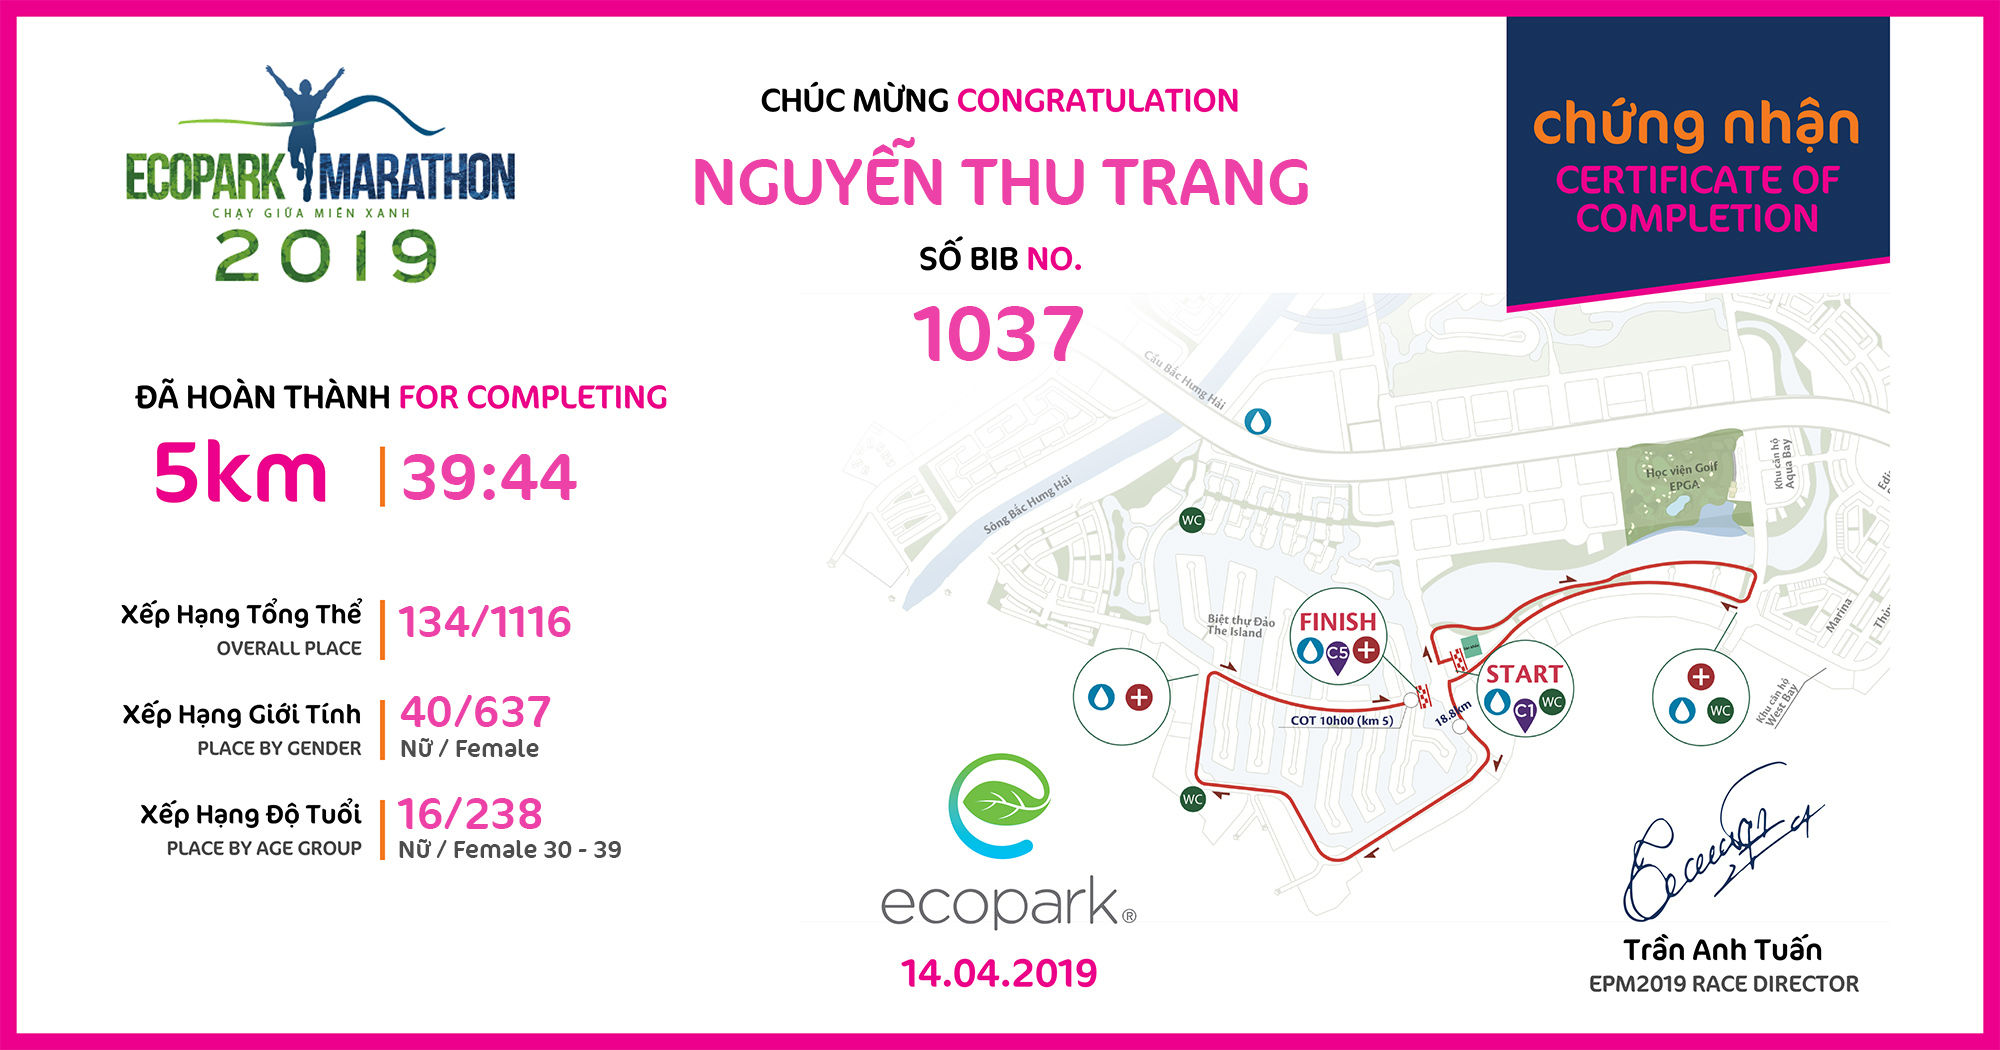 1037 - Nguyễn Thu Trang